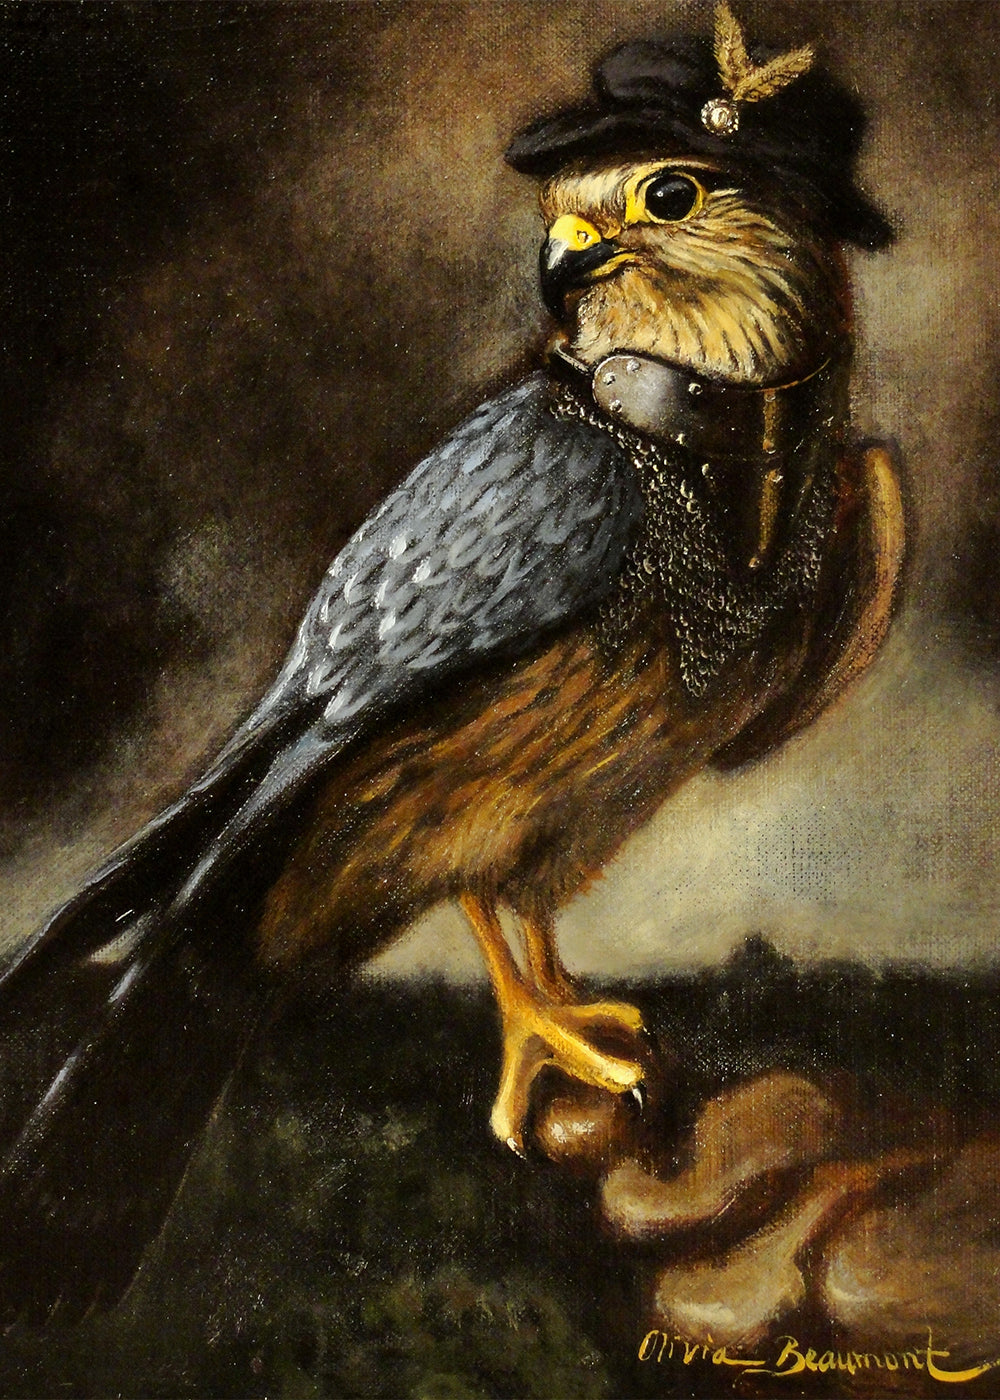 Merek- Merlin hawk prints